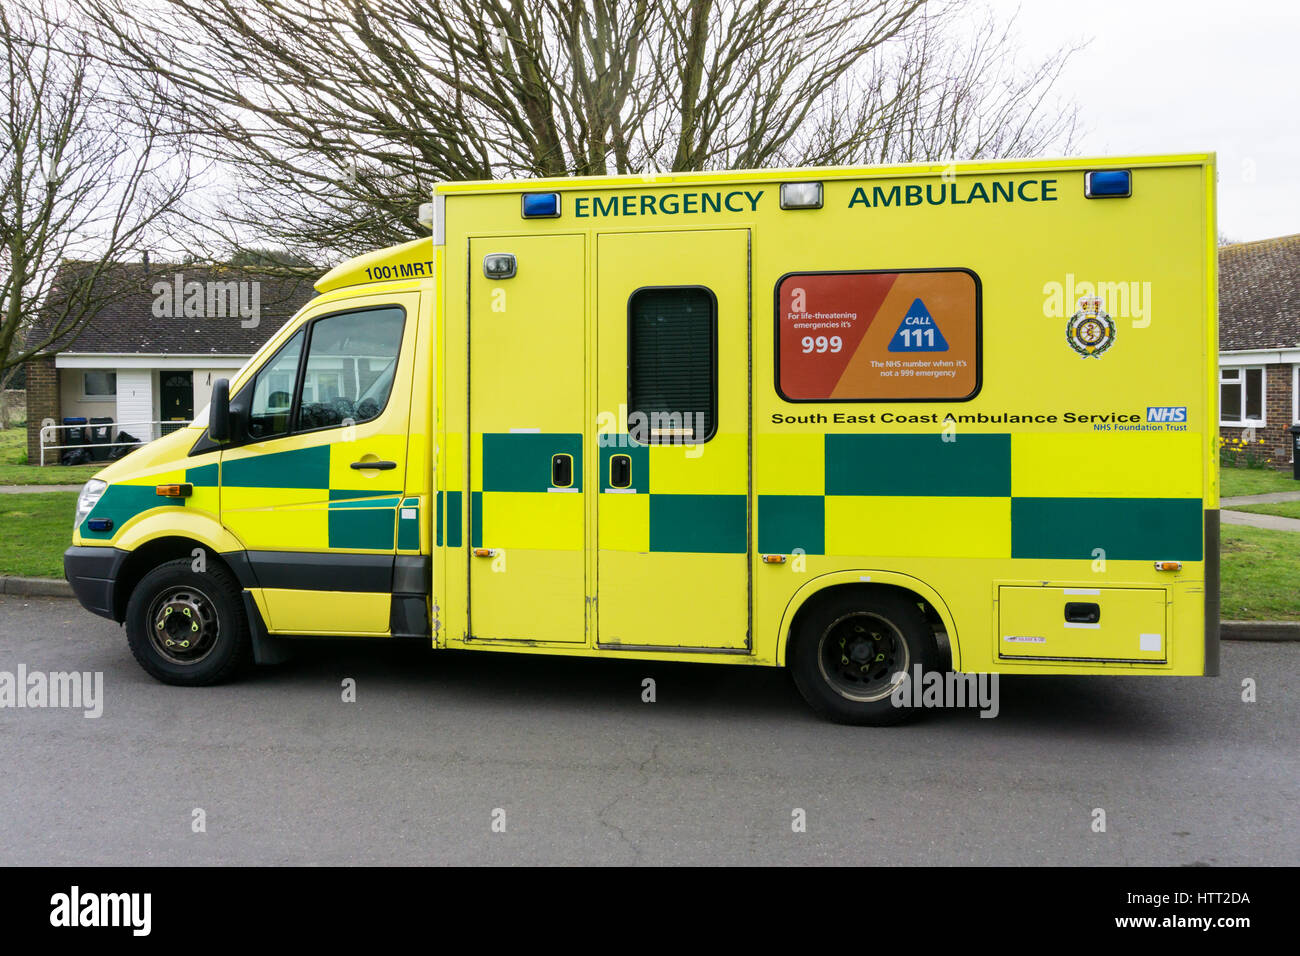 999 & 111 Telefonnummern auf der Seite einen Krankenwagen aus der South East Coast Ambulance Service NHS Foundation Trust angezeigt. Stockfoto